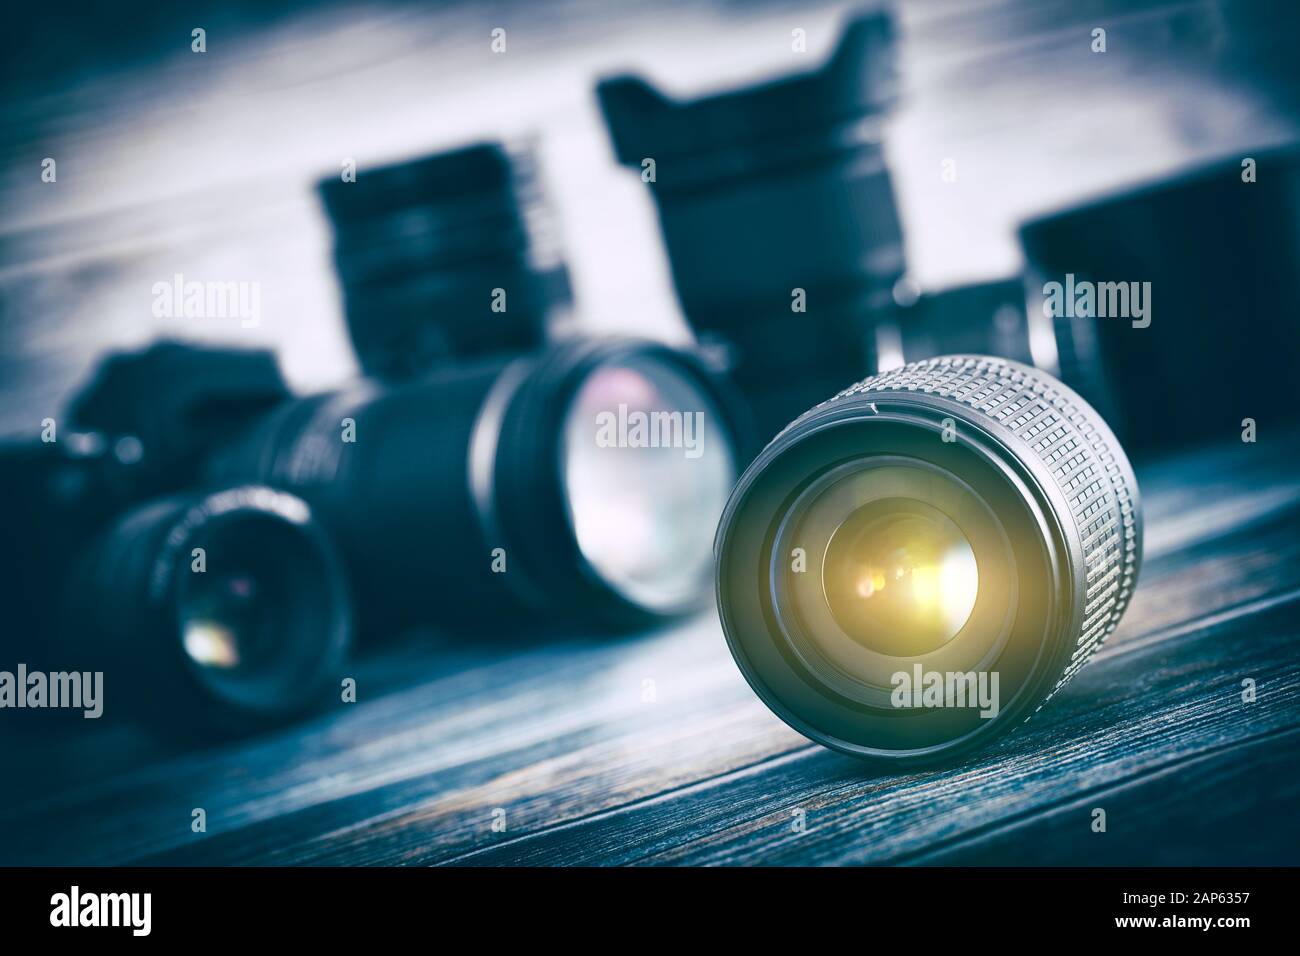 Fotografía profesional lente fotógrafo equipo fotográfico de trabajo lentes - Stock Image Foto de stock